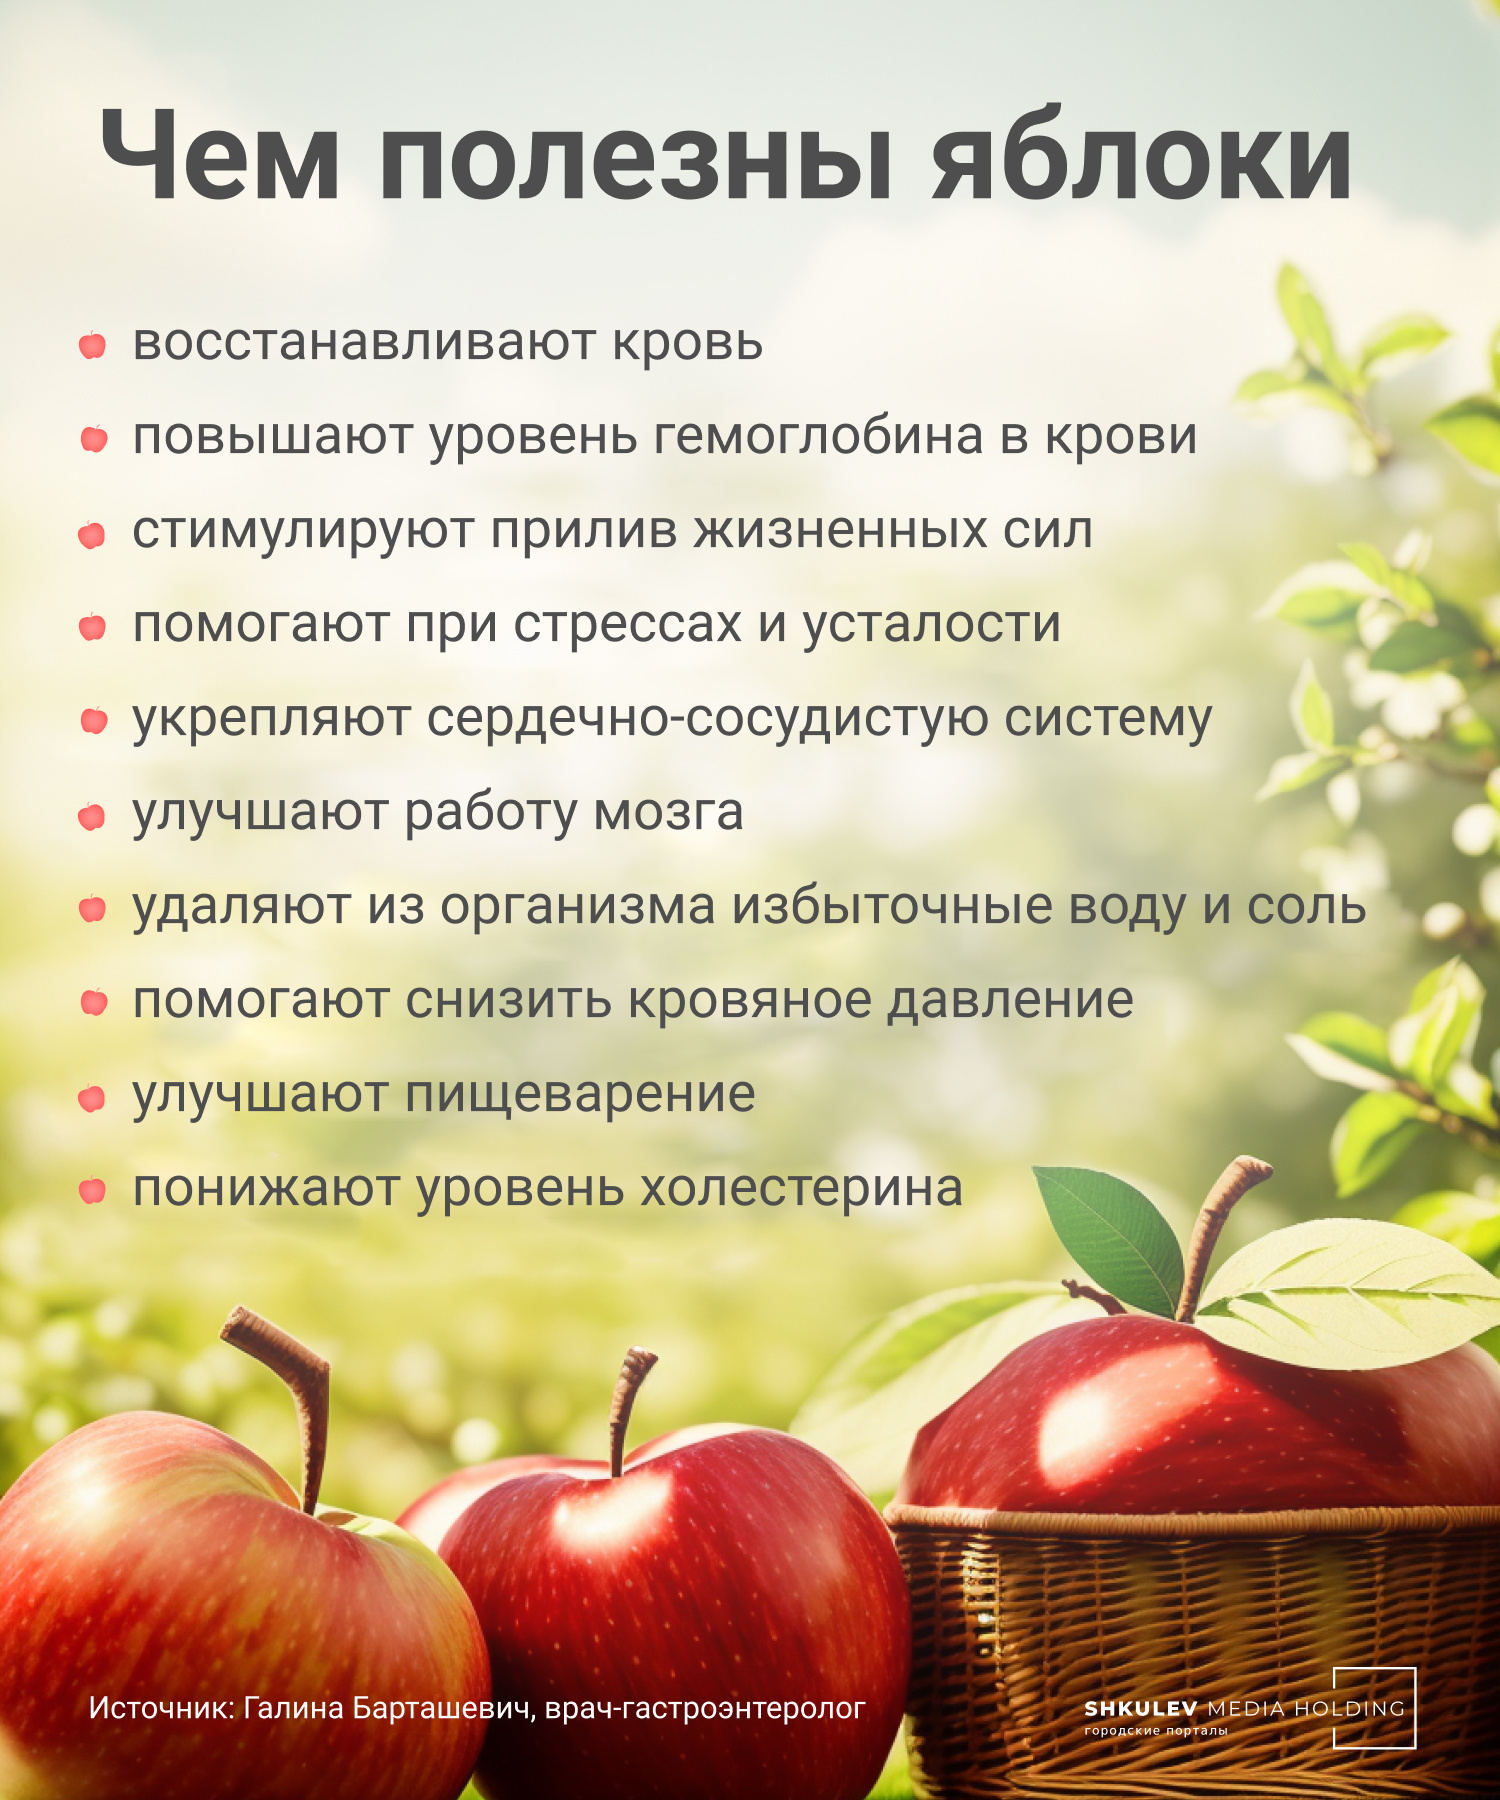 Врачи назвали 7 причин, из-за которых нельзя есть яблоки. А вас это касается?